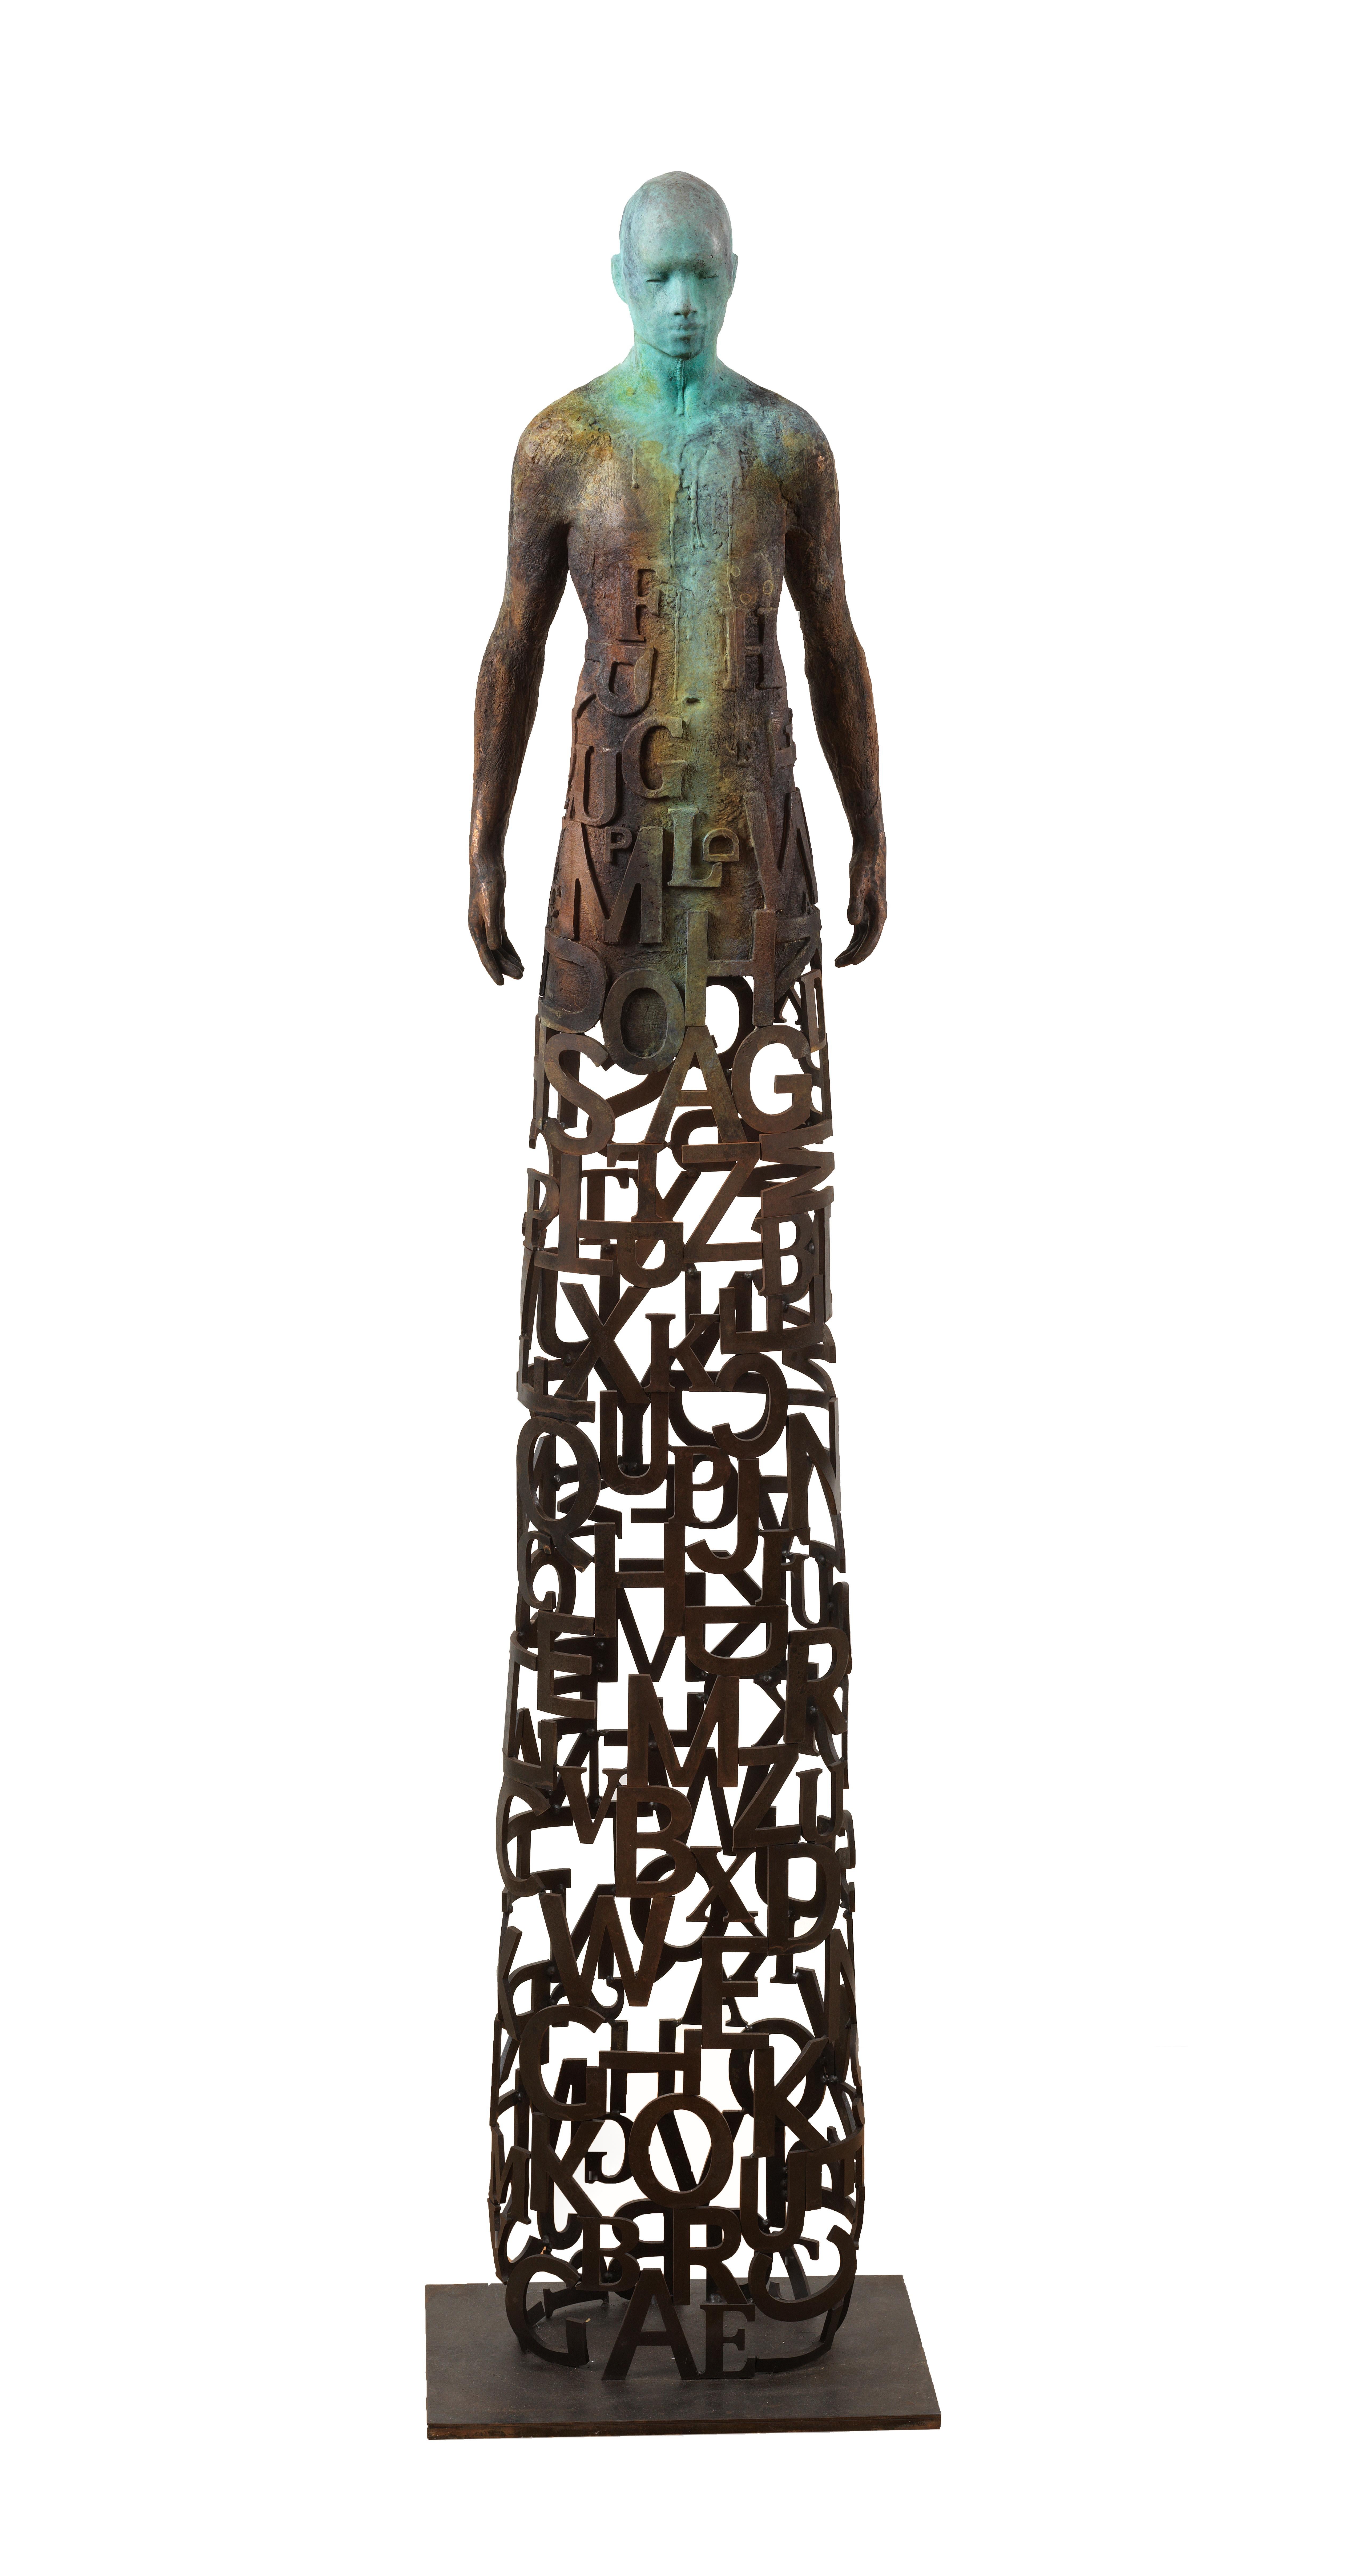 Jesus Curia Perez Figurative Sculpture – Nuntius – Skulptur aus Bronze und Stahl mit Figur und durchsichtigem „Wörter“-Garment